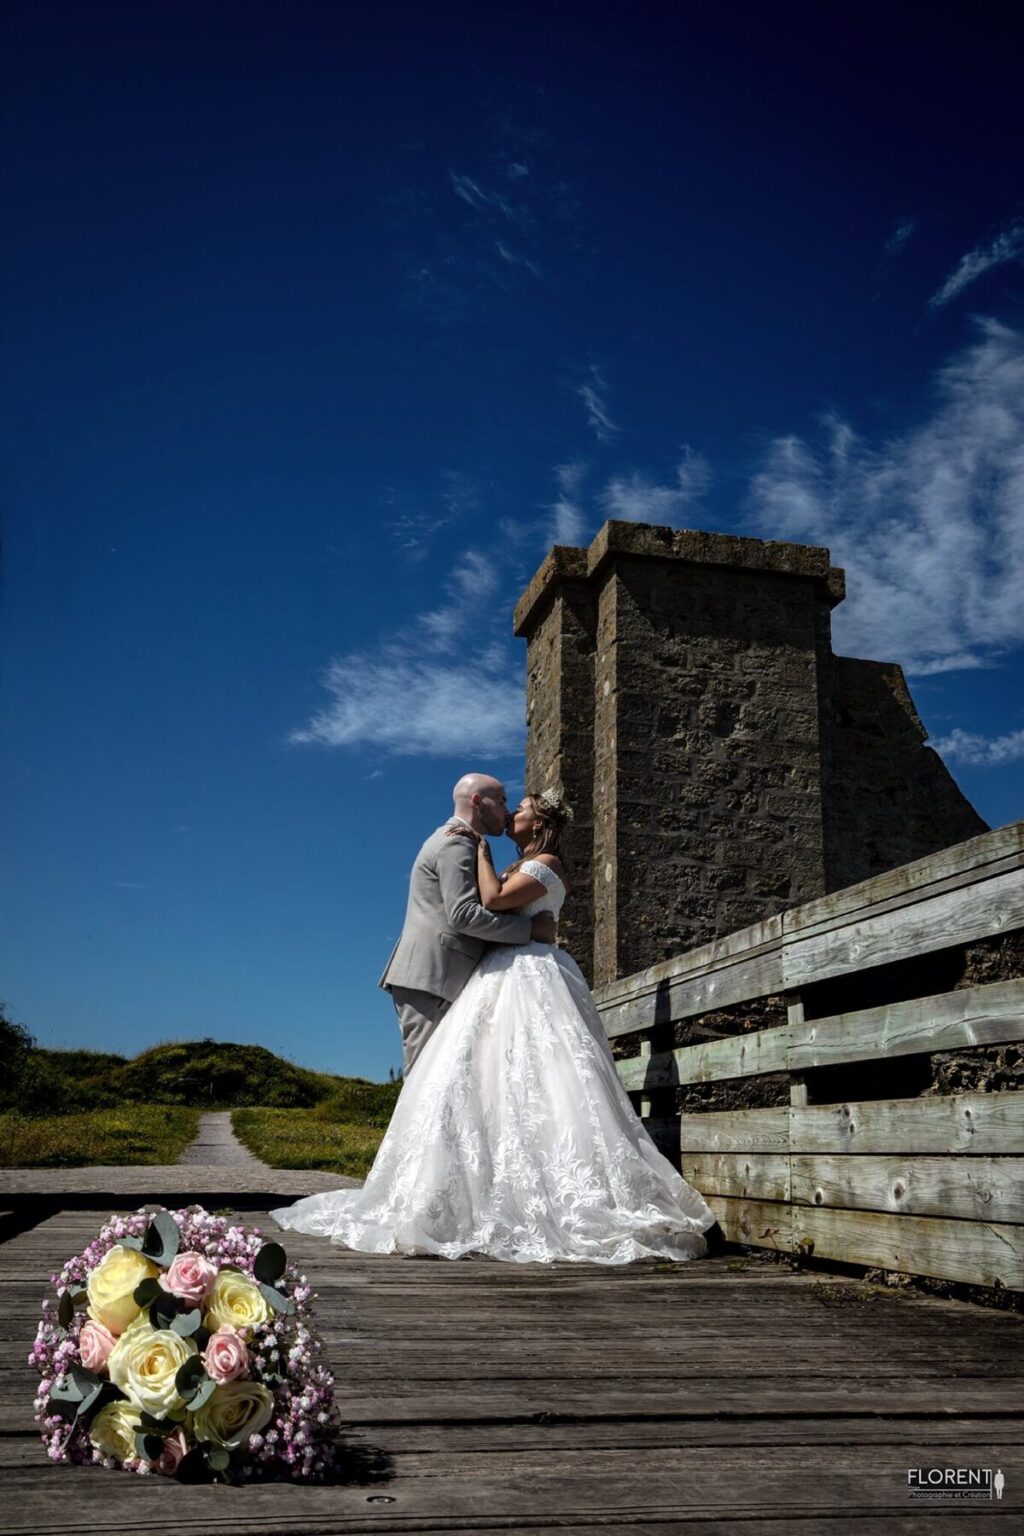 photographe mariage les mariés s'embrassent sur un pont paris florent studio boulogne sur mer lille le touquet calais amiens saint omer amiens